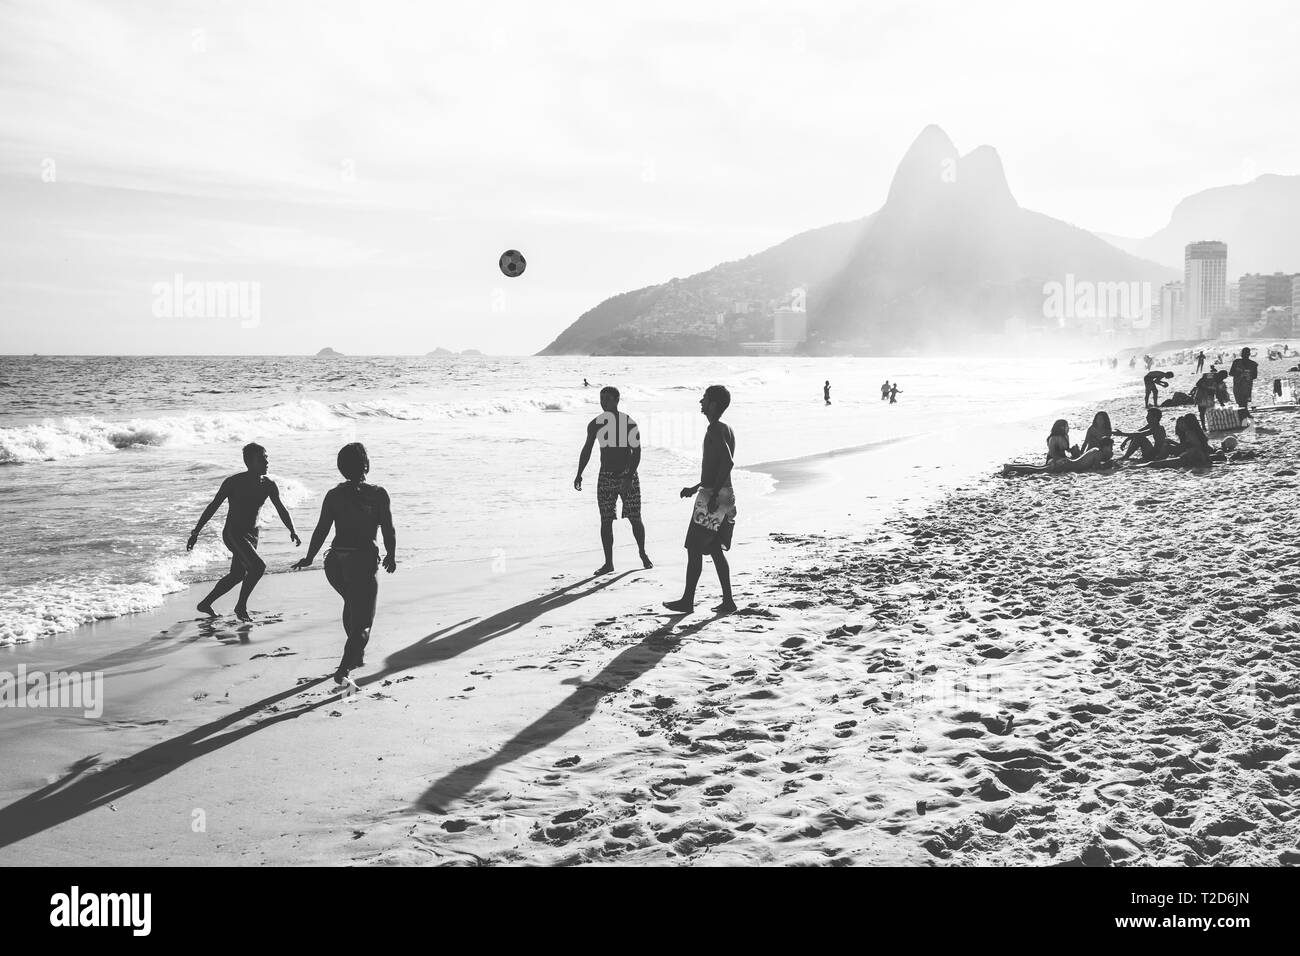 RIO DE JANEIRO, Brésil - 24 février 2015 : un groupe de Brésiliens jouant sur le rivage de la plage d'Ipanema Banque D'Images